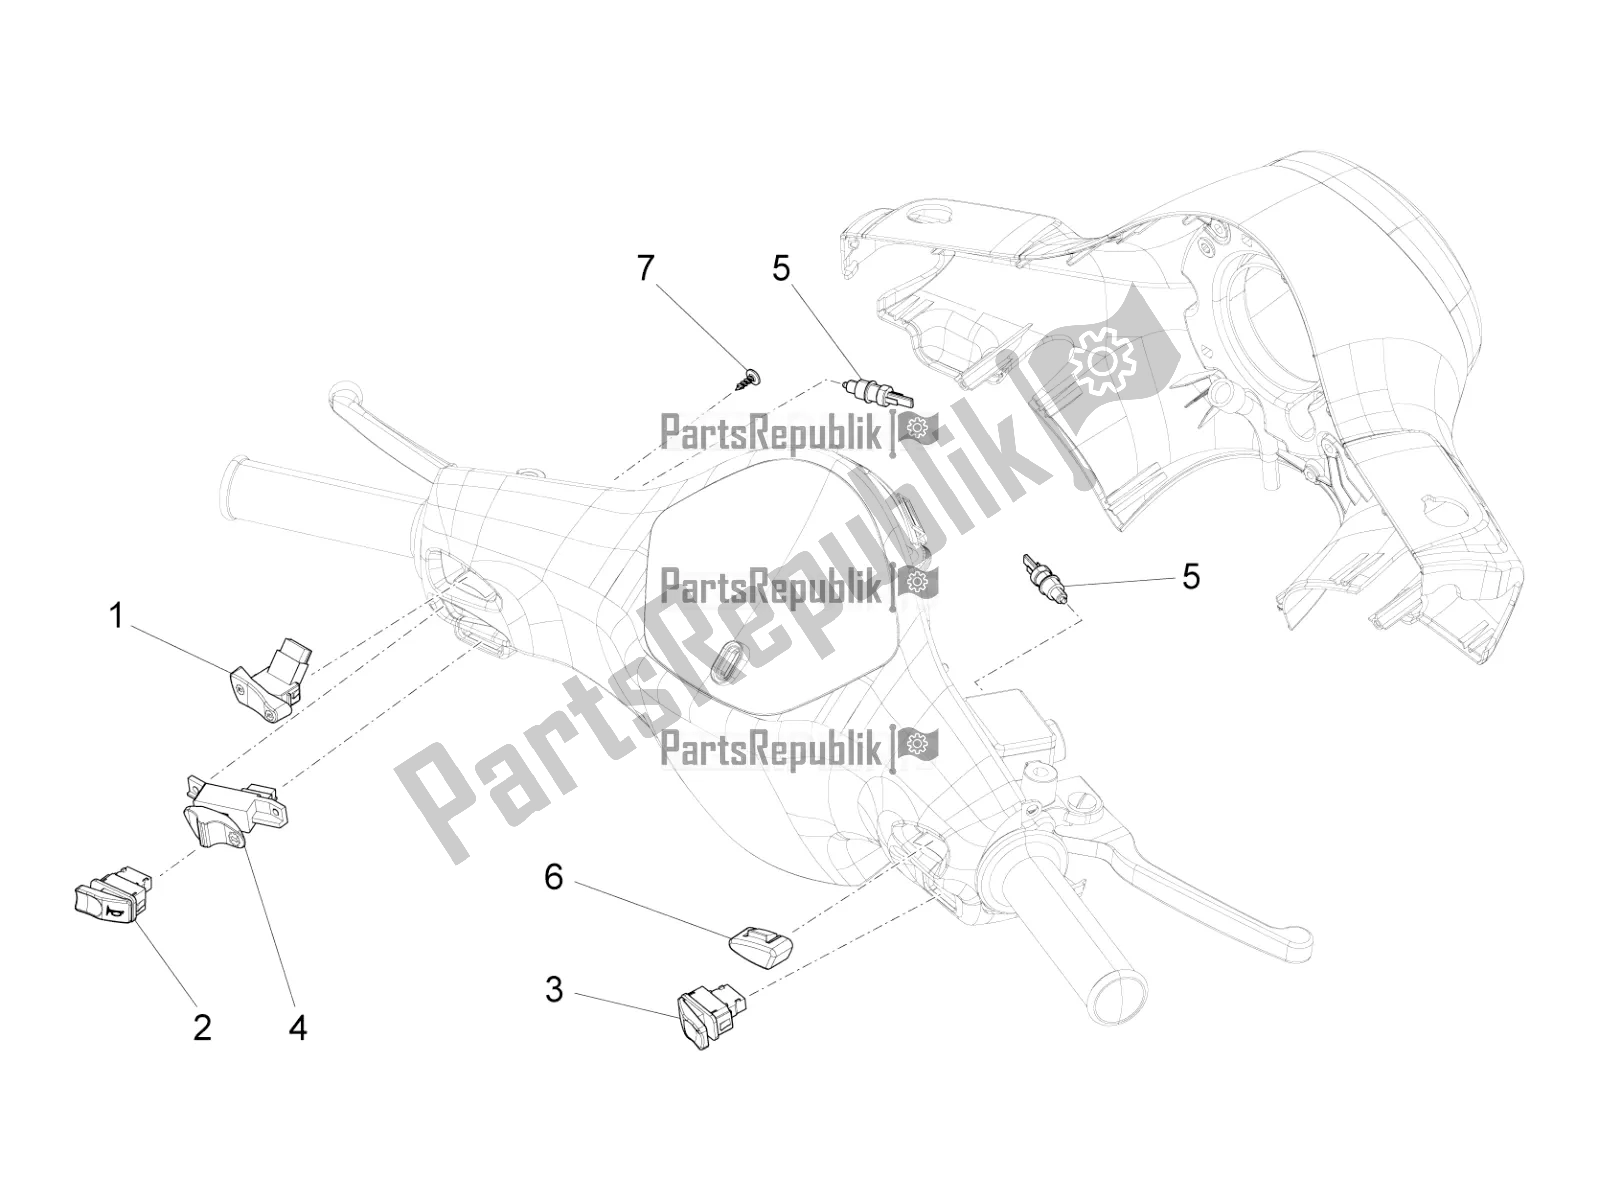 Todas as partes de Seletores - Interruptores - Botões do Vespa SXL 125 4T 3V Apac 2021